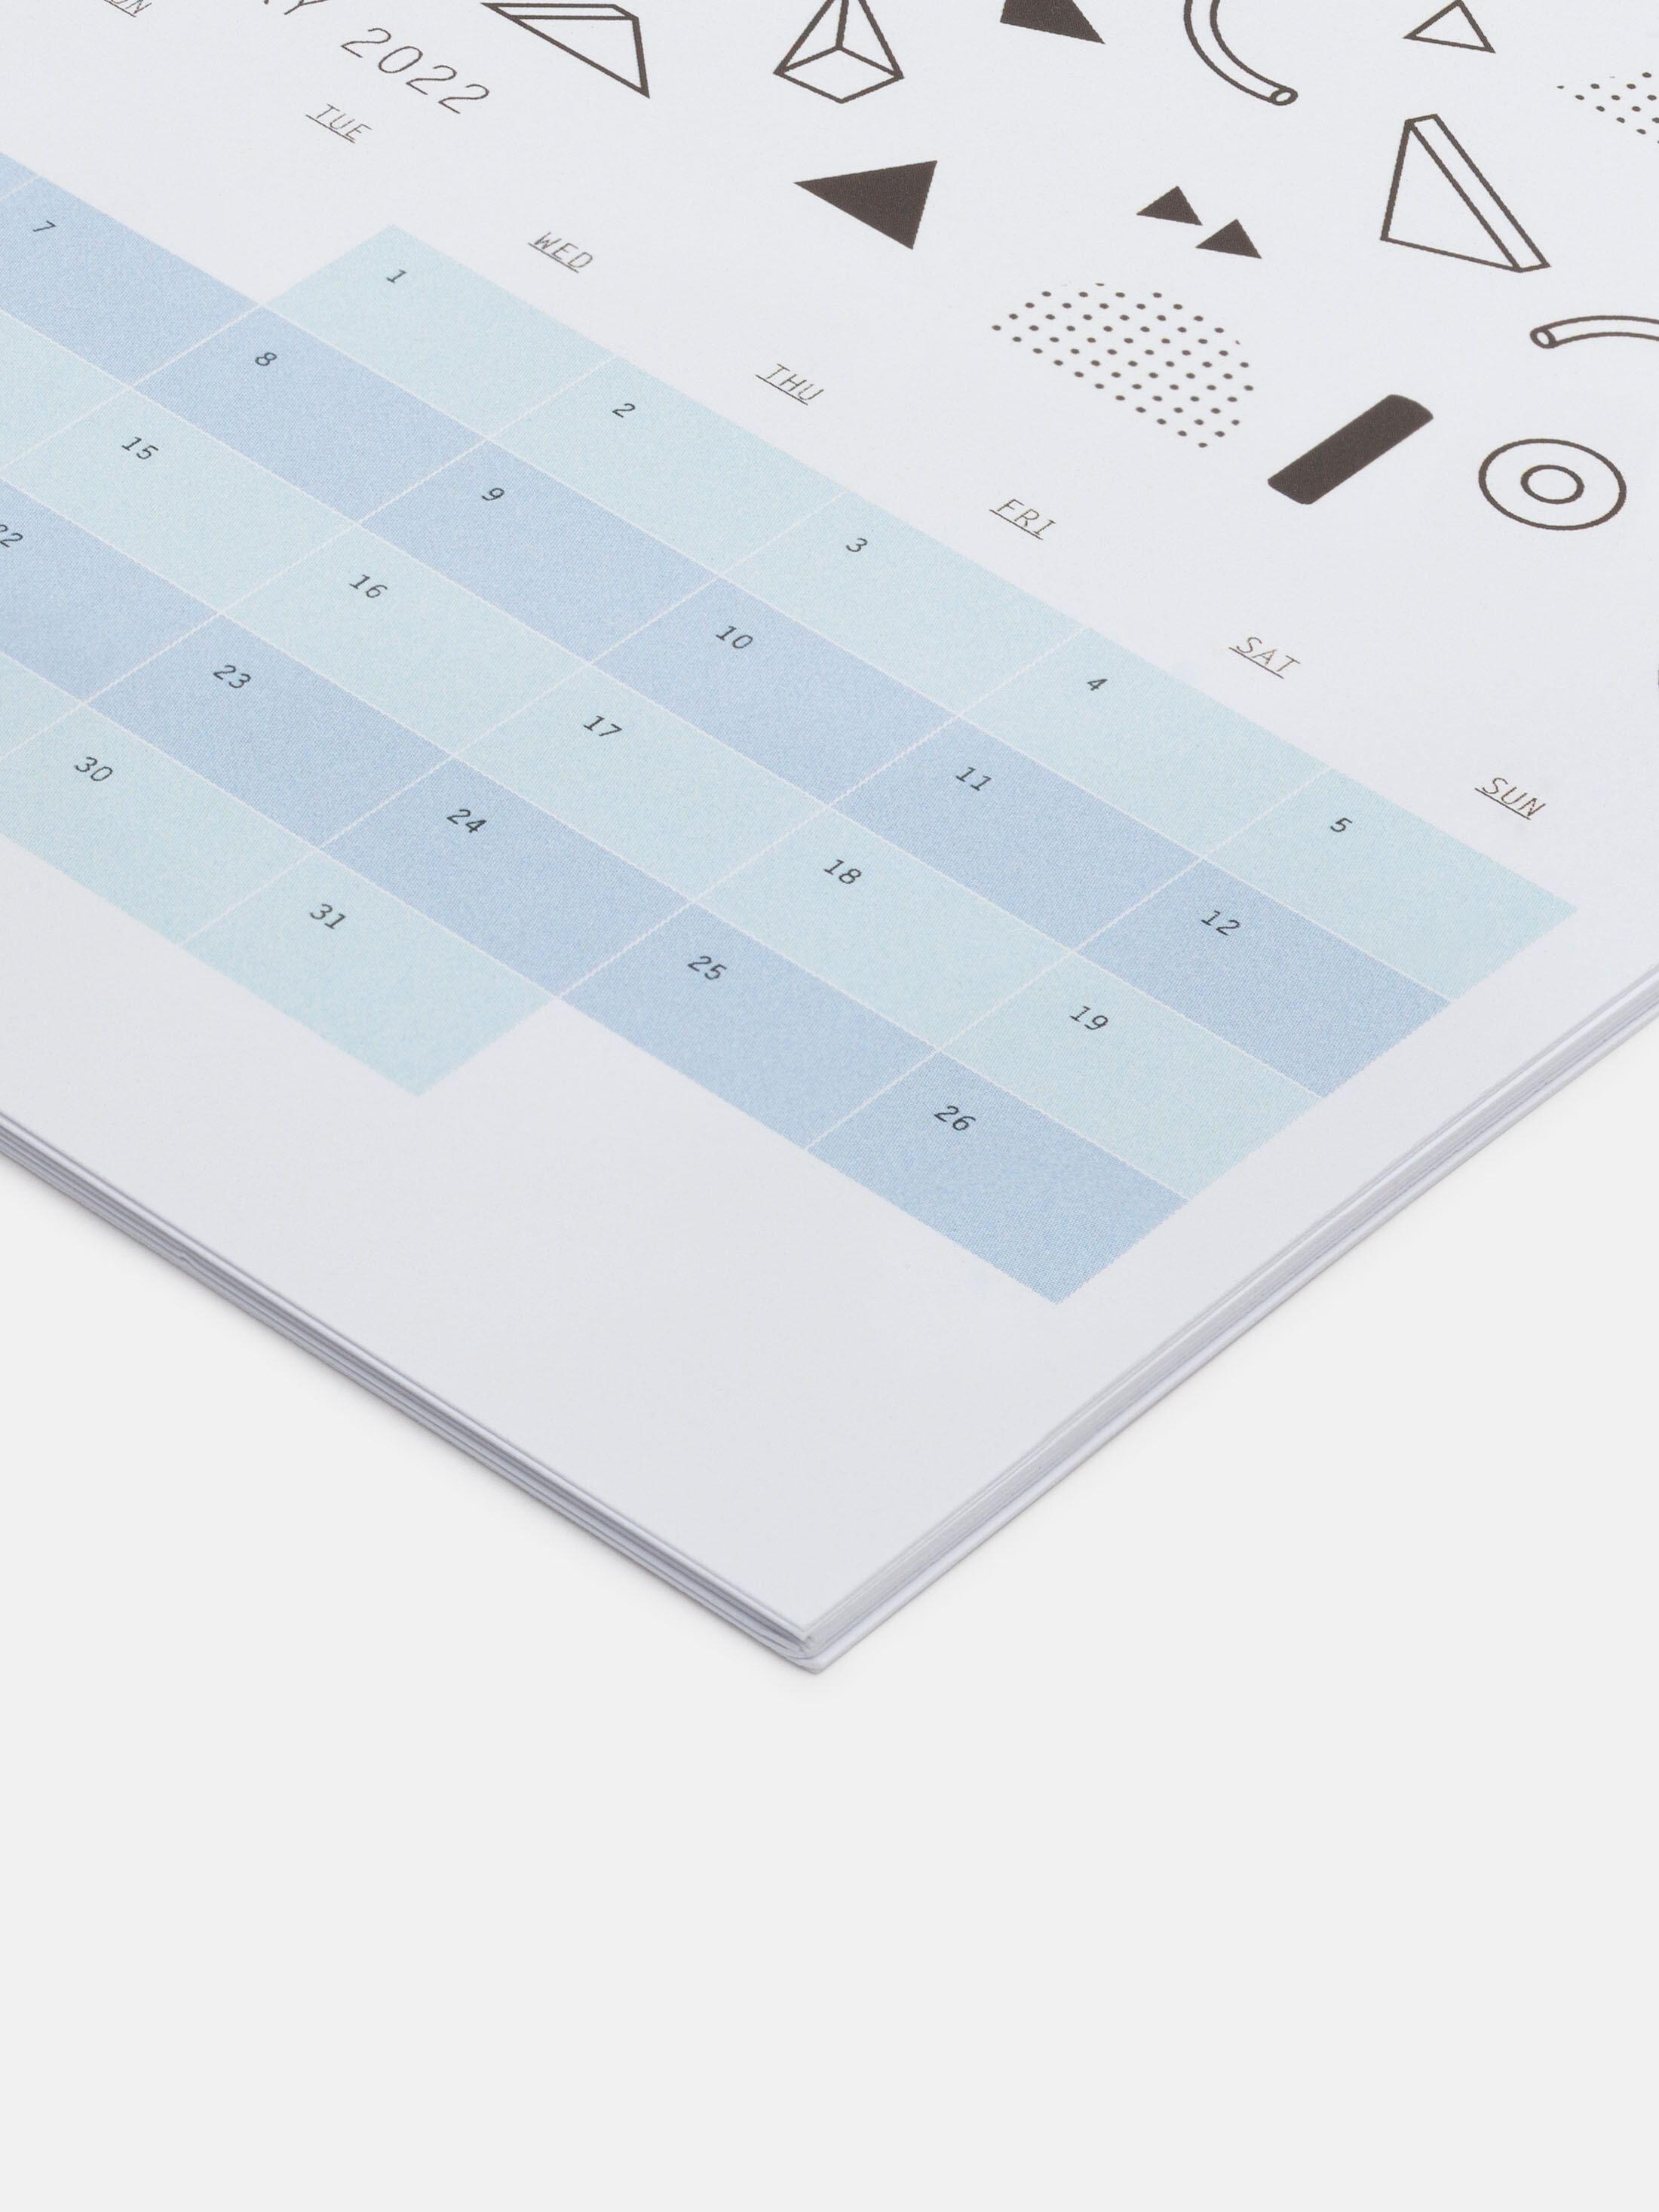 print your own desk calendar new zealand